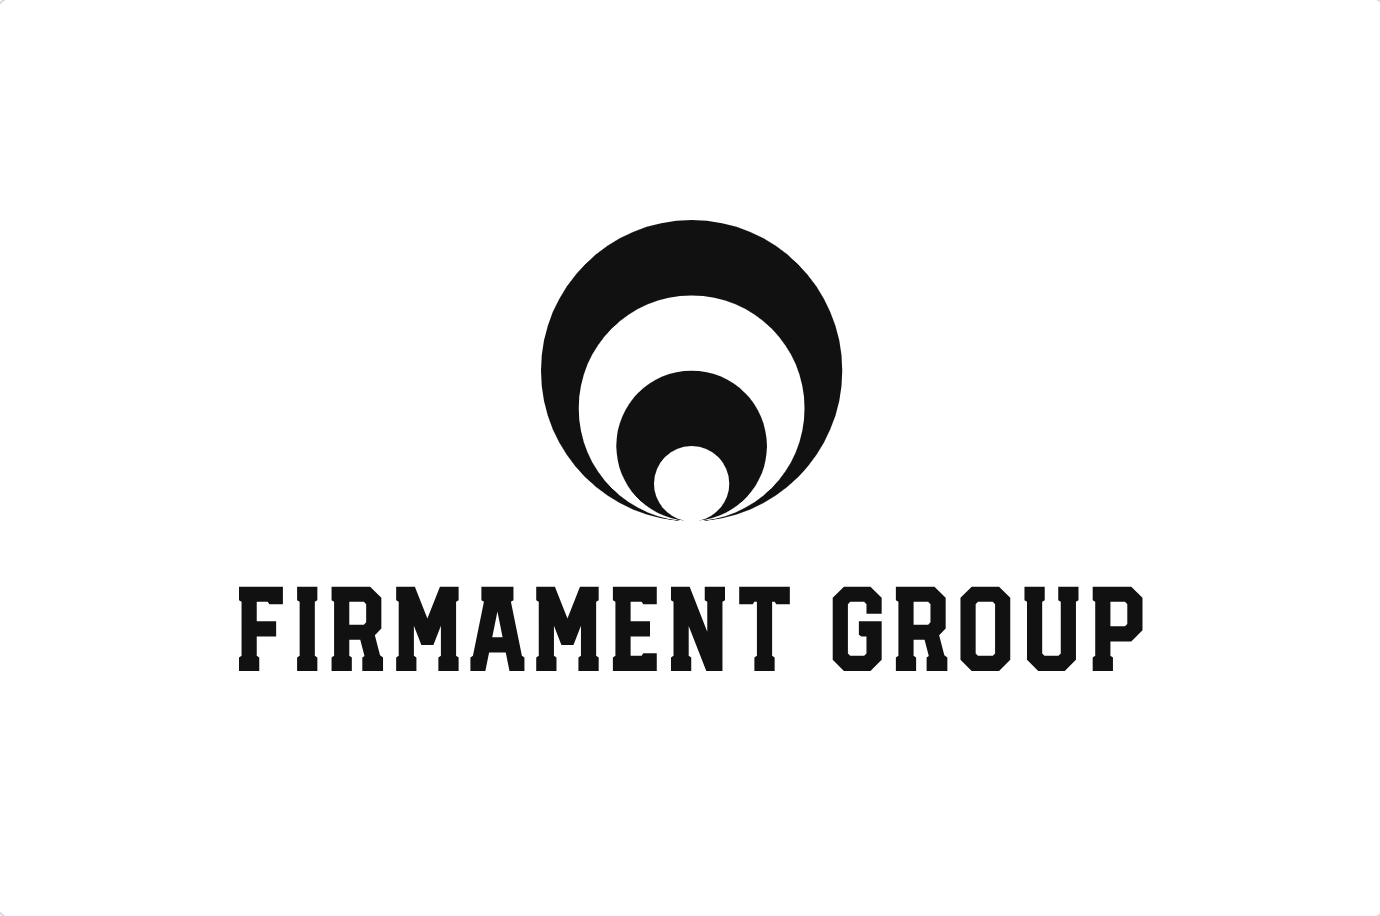 Firmament Group